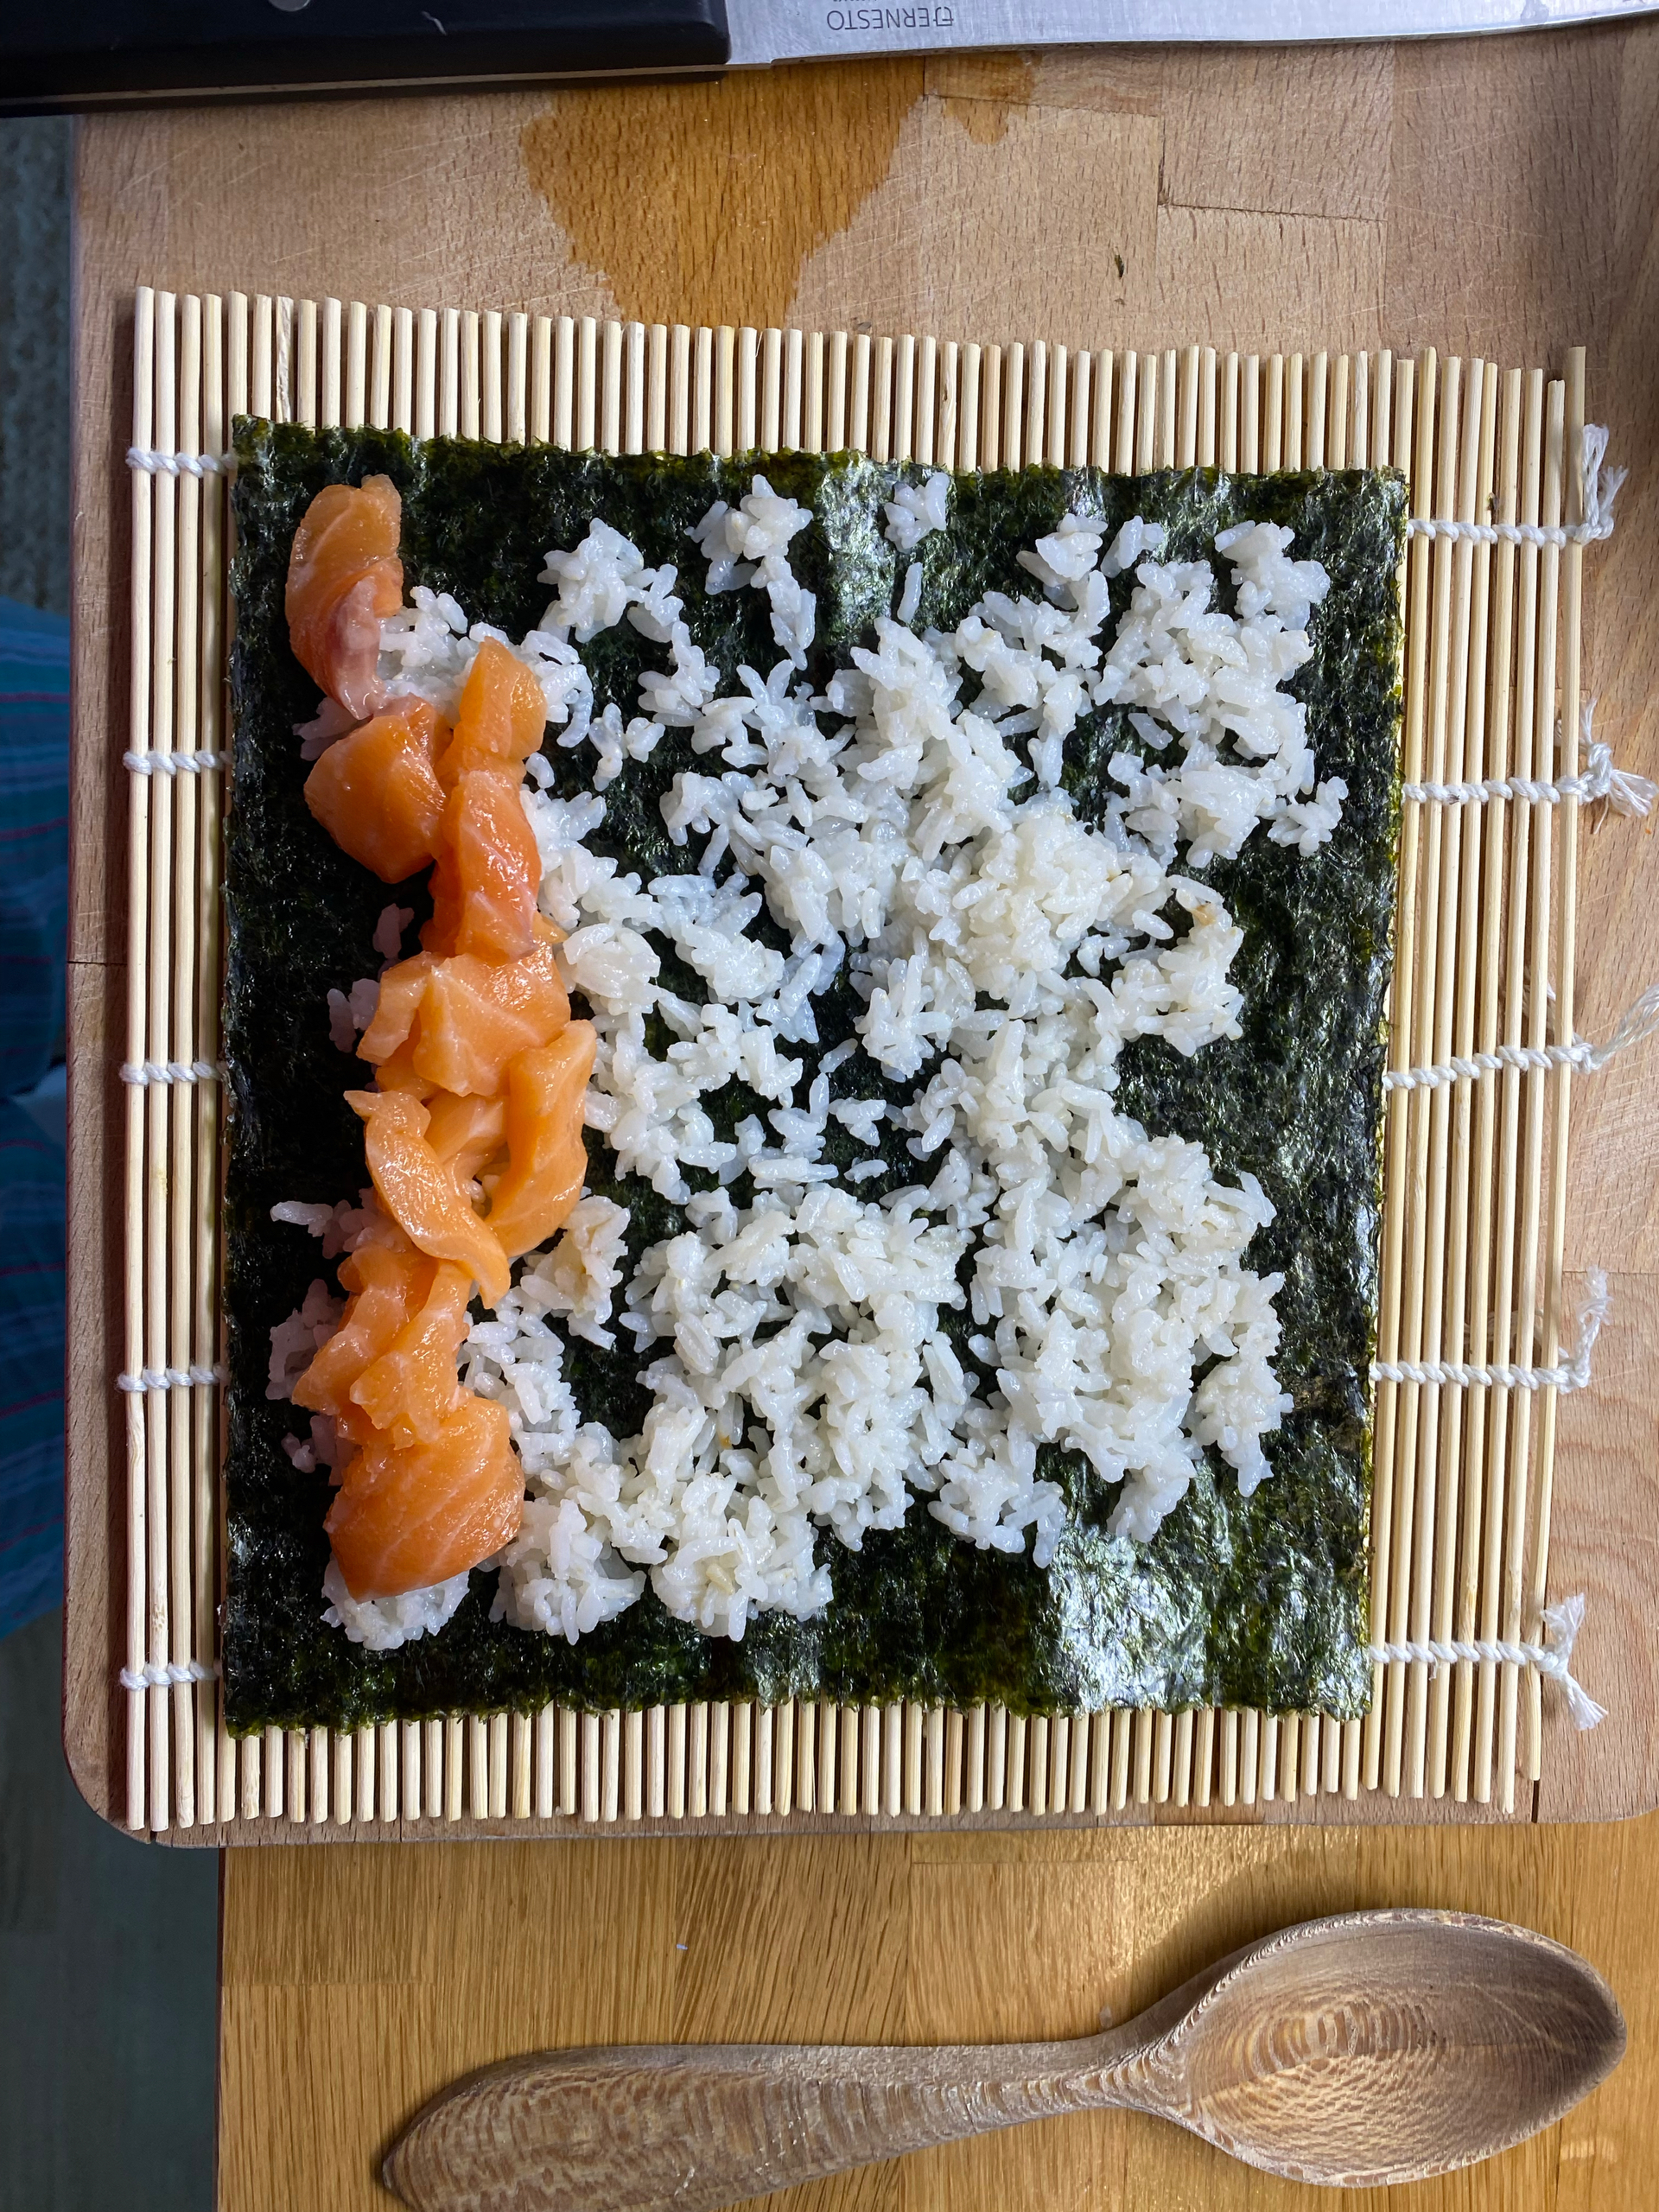 基本寿司醋饭——电锅版